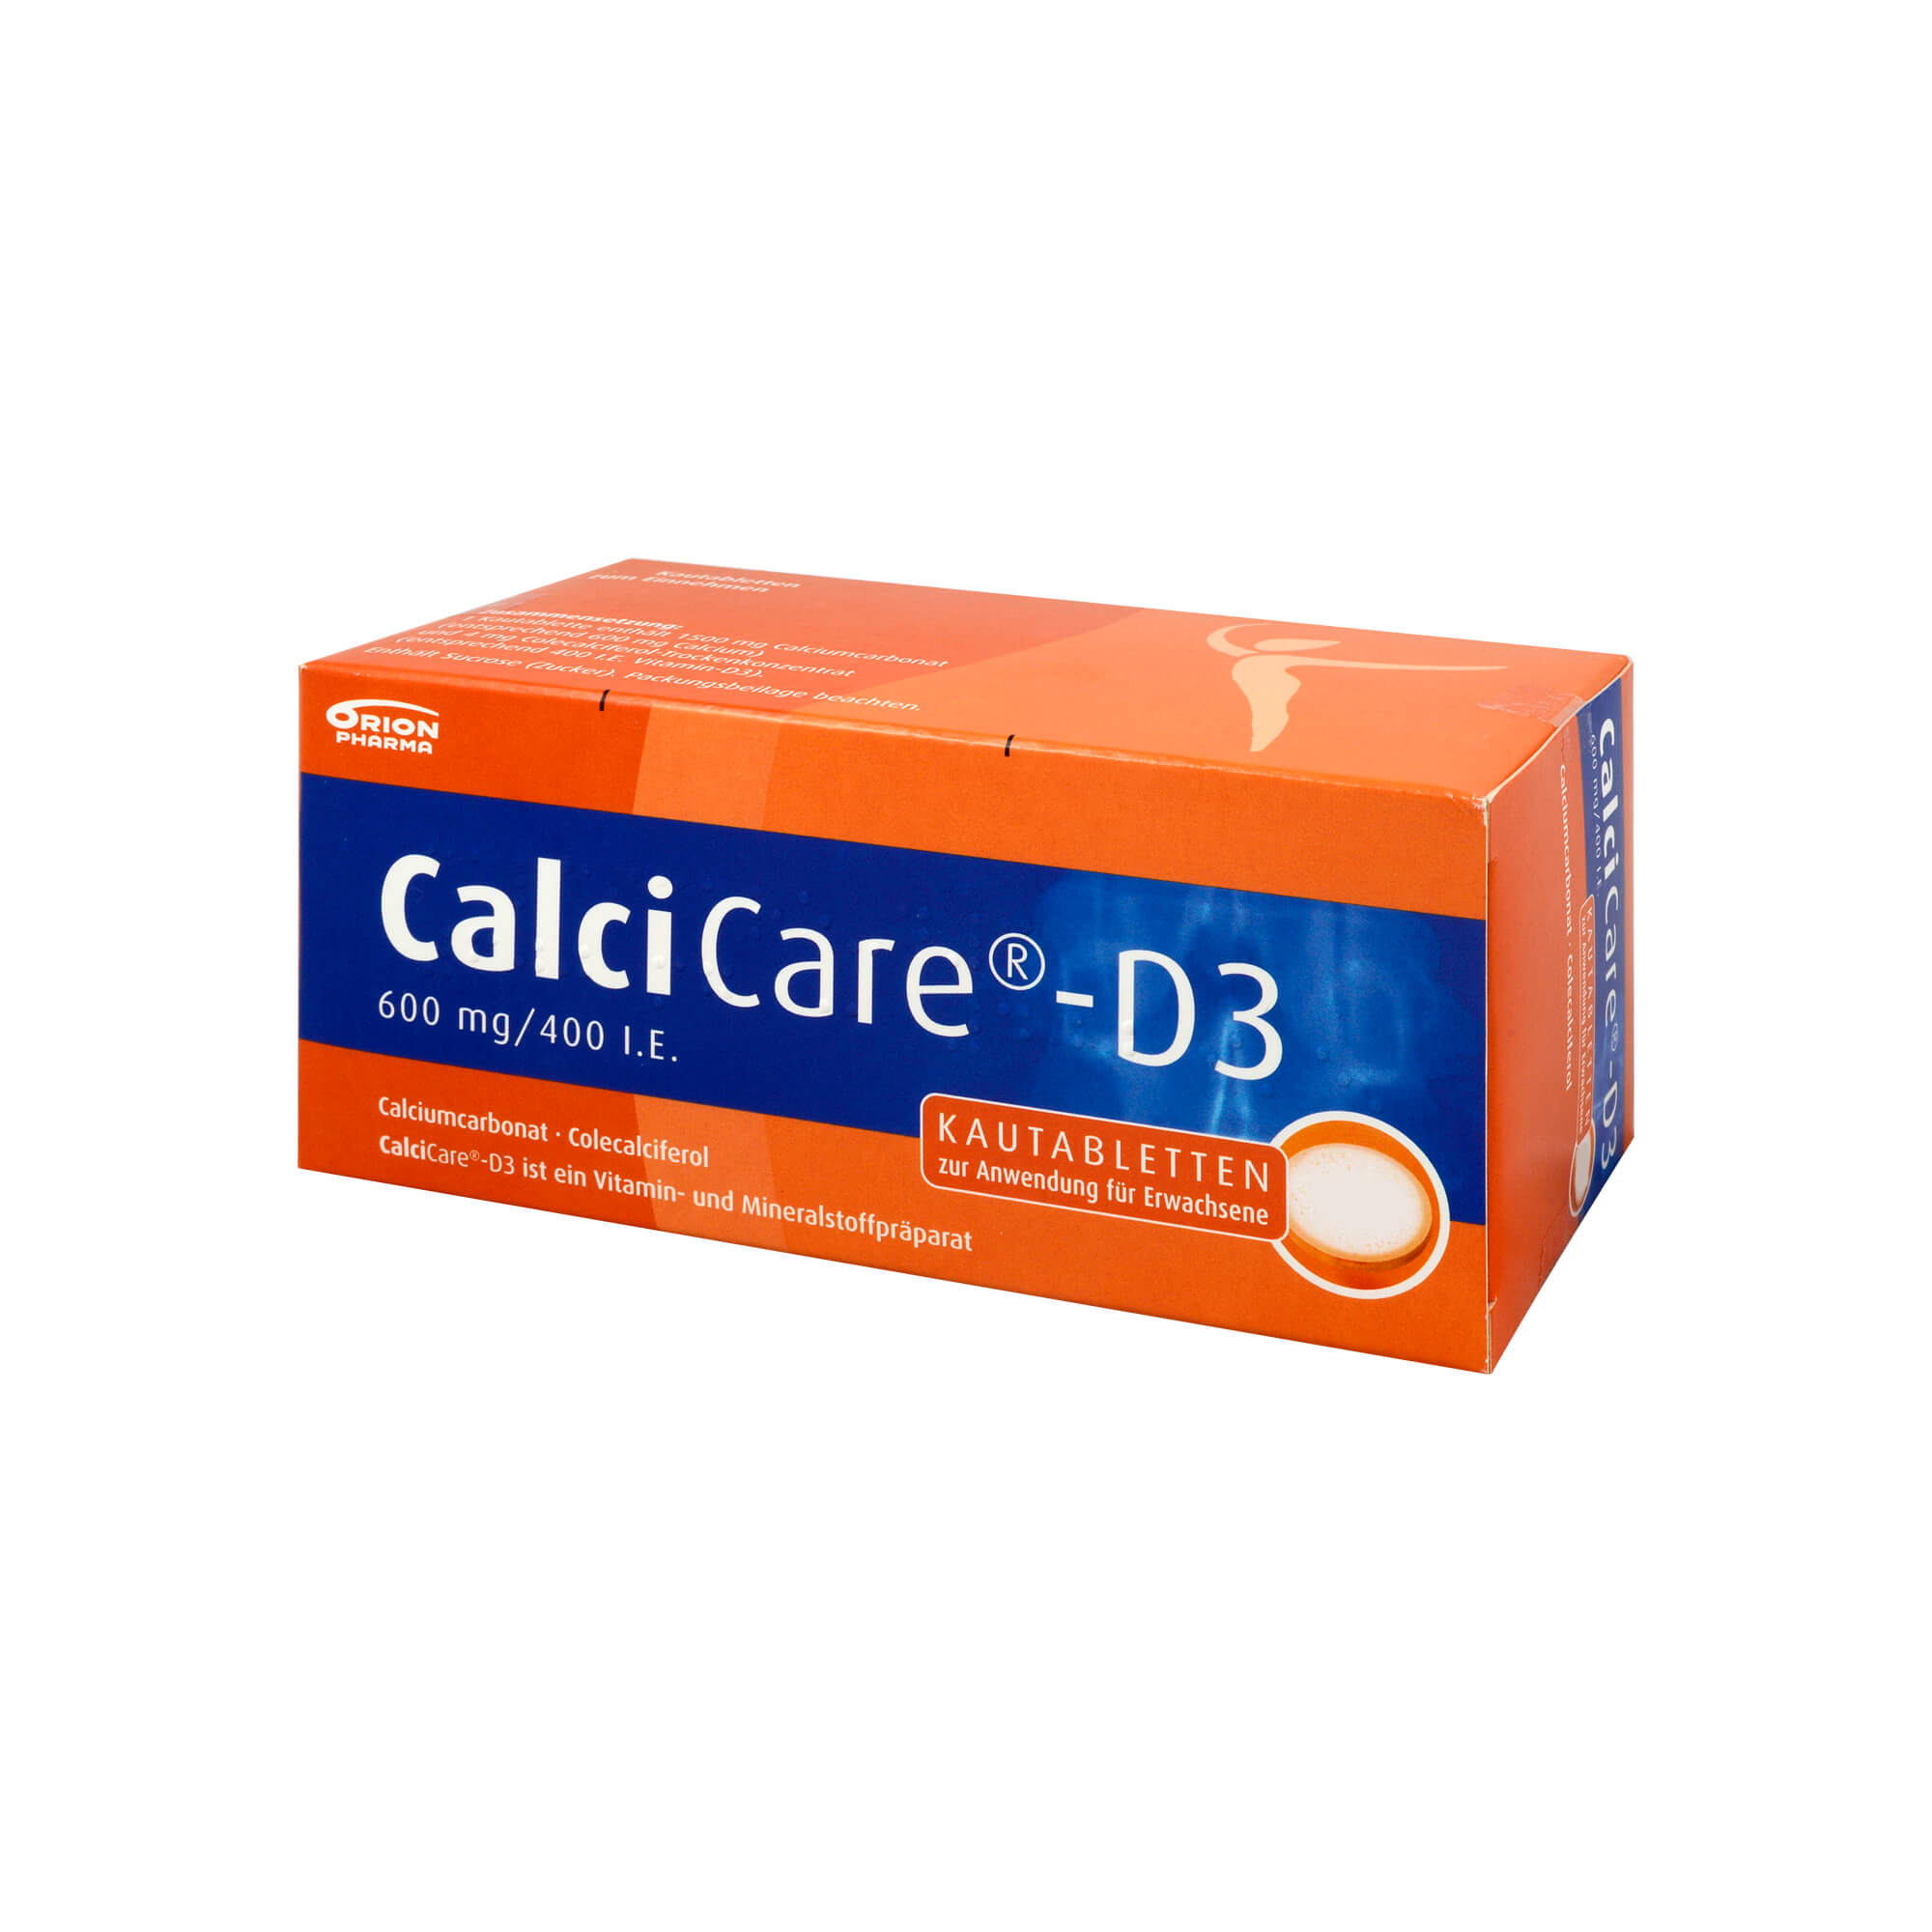 Vitamin D- und Calciumsupplement zur Unterstützung einer spezifischen Therapie, zur Prävention und Behandlung der Osteoporose und zur Vorbeugung und Behandlung von Vitamin D- und Calcium-Mangelzust